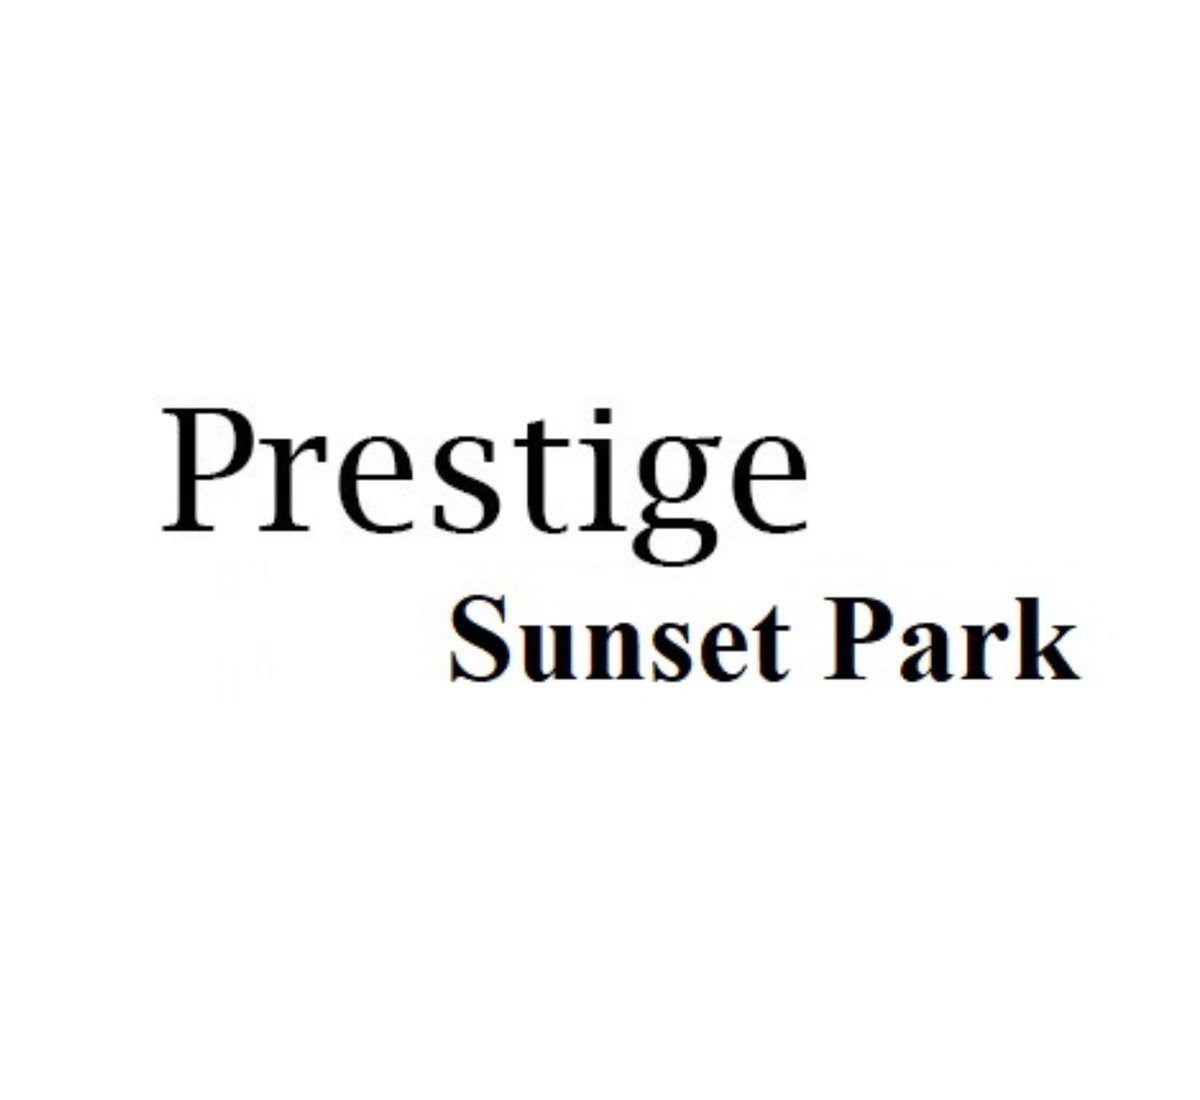 Prestige Sunset Park A Symphony of Modernity and Tranquility